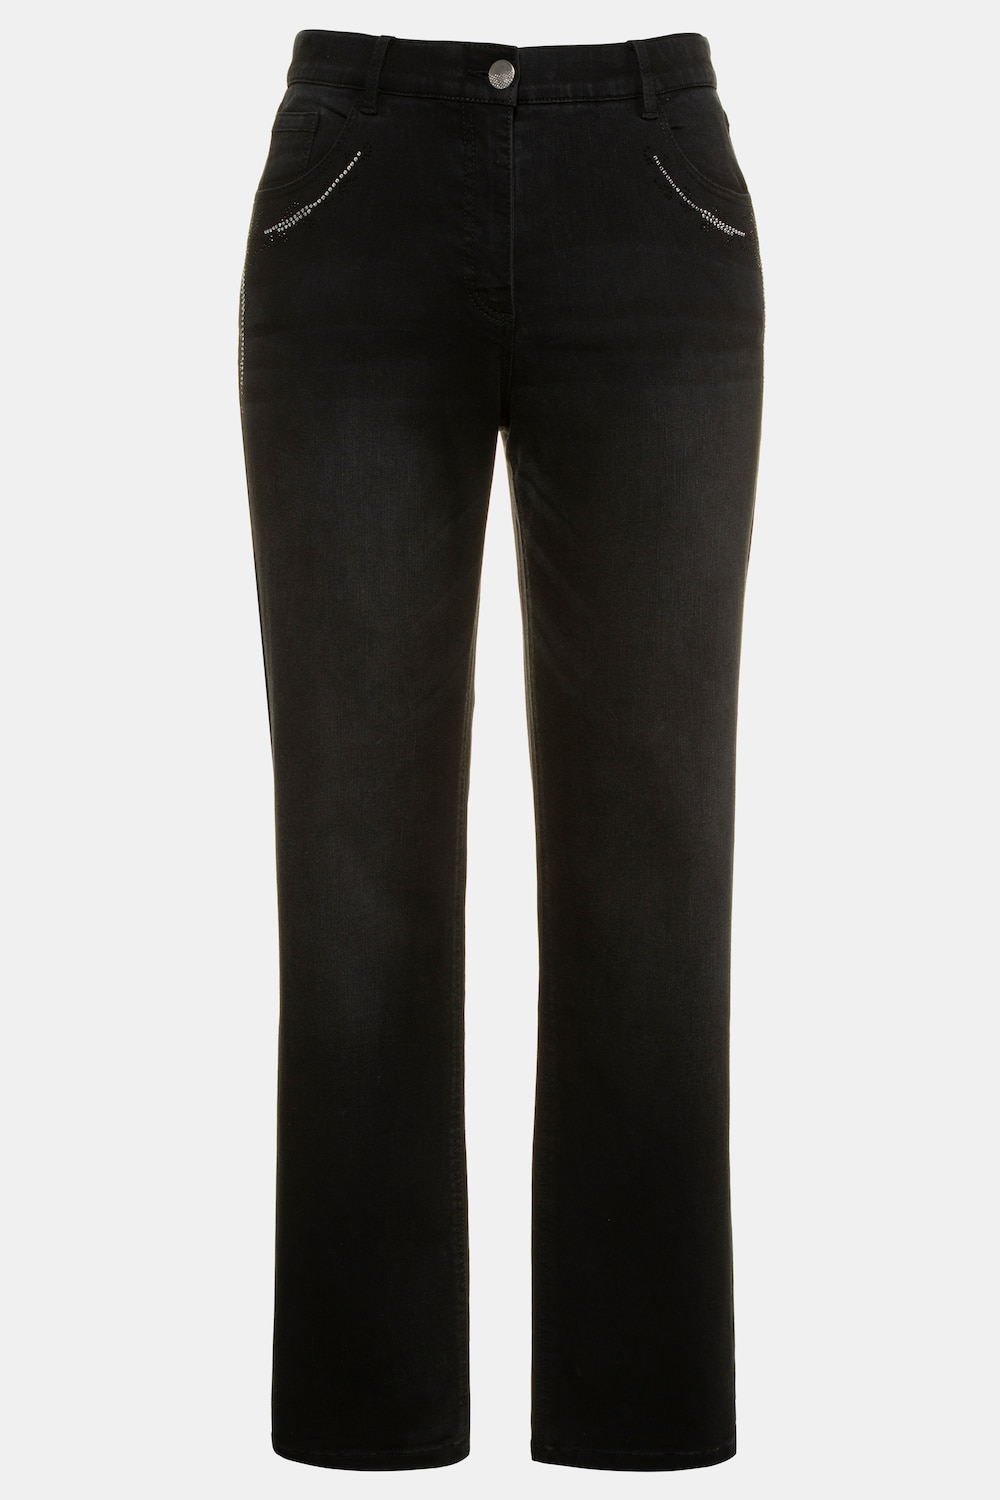 Grote Maten jeans, Dames, zwart, Maat: 120, Katoen/Viscose/Polyester, Ulla Popken